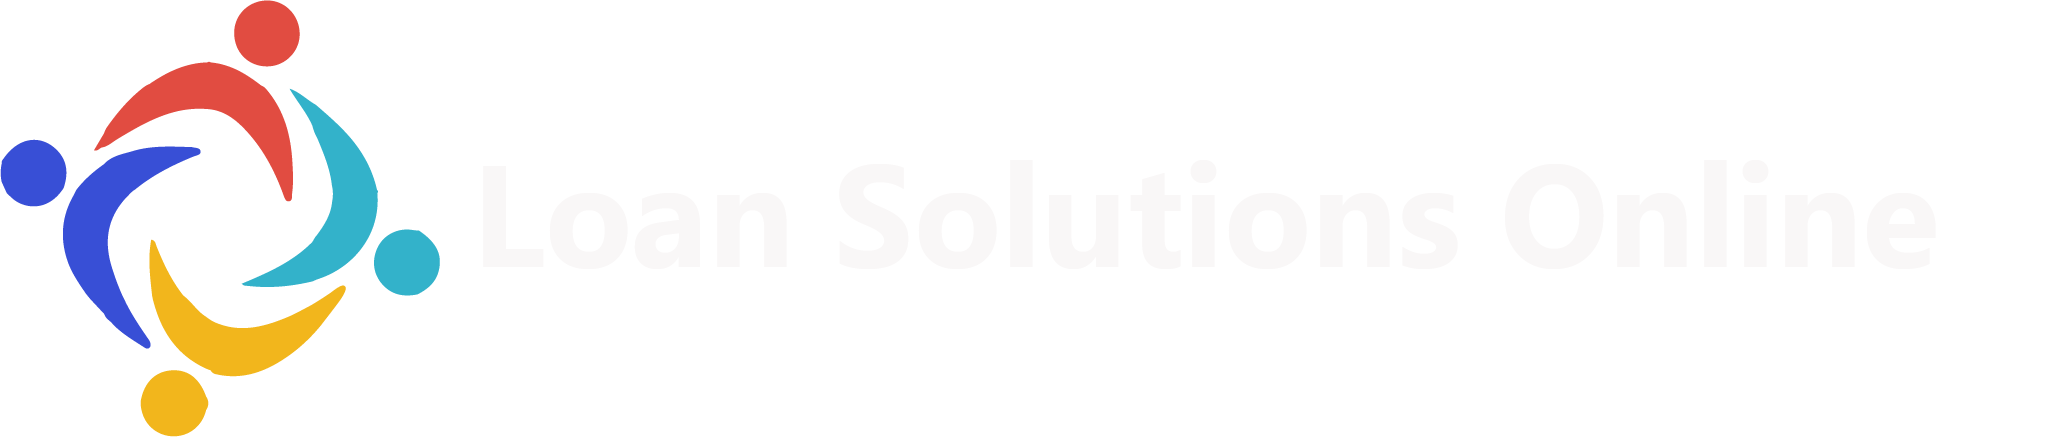 Loan Solutions Online